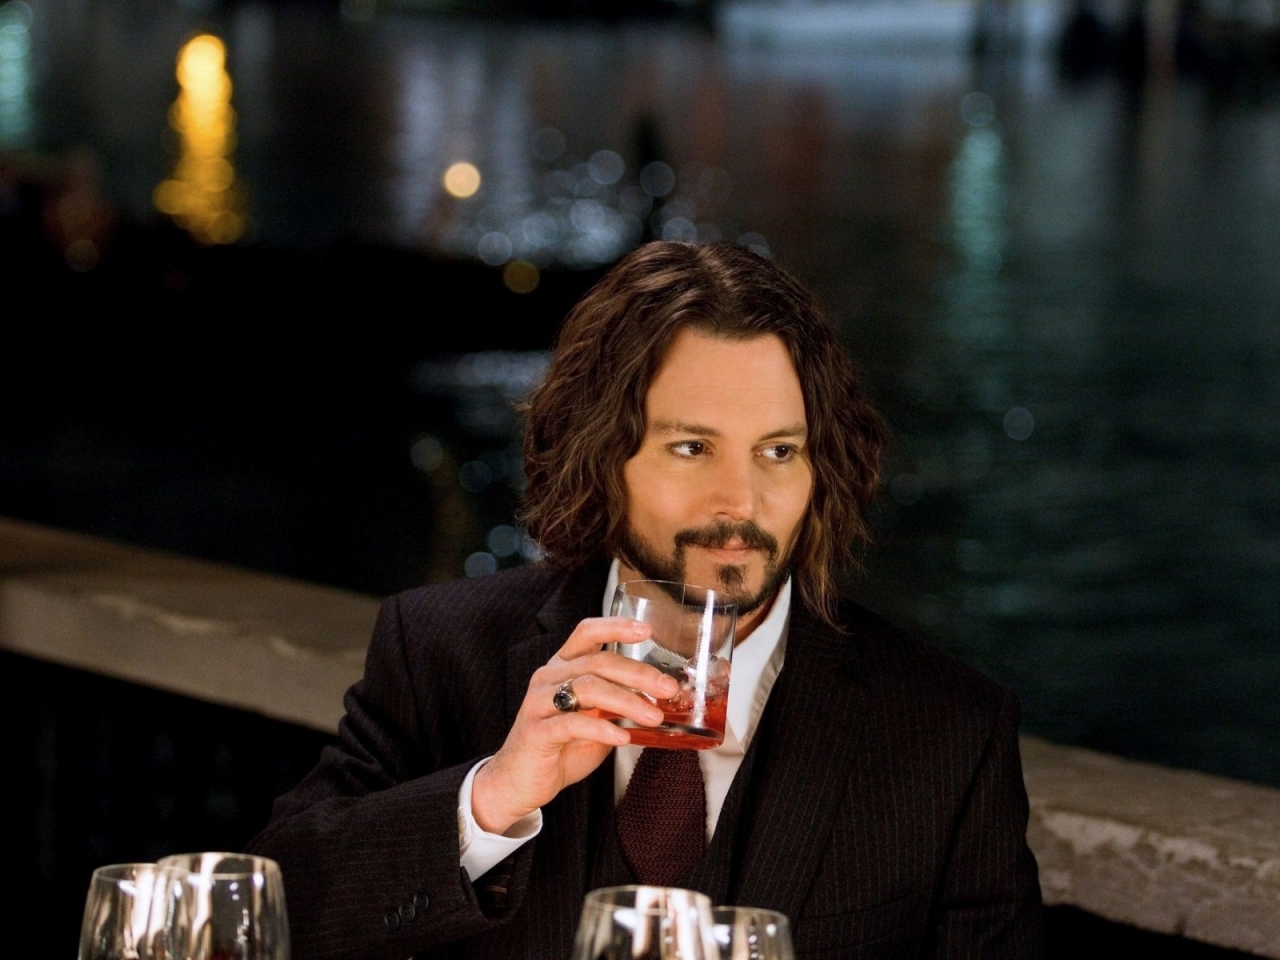 Johnny Depp Drinking for 1280 x 960 resolution